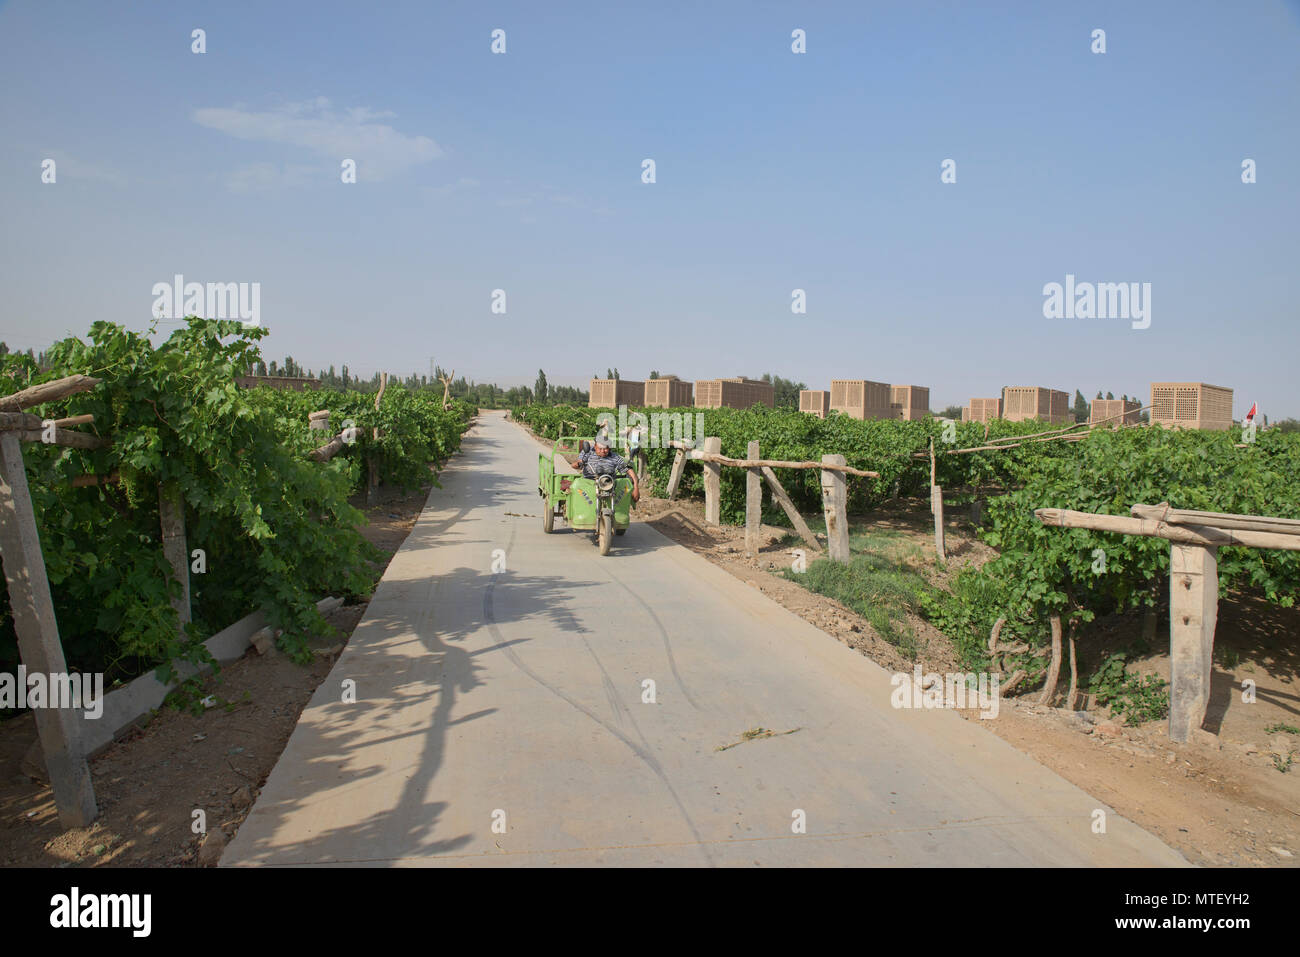 The grape fields of Turpan, Xinjiang, China Stock Photo